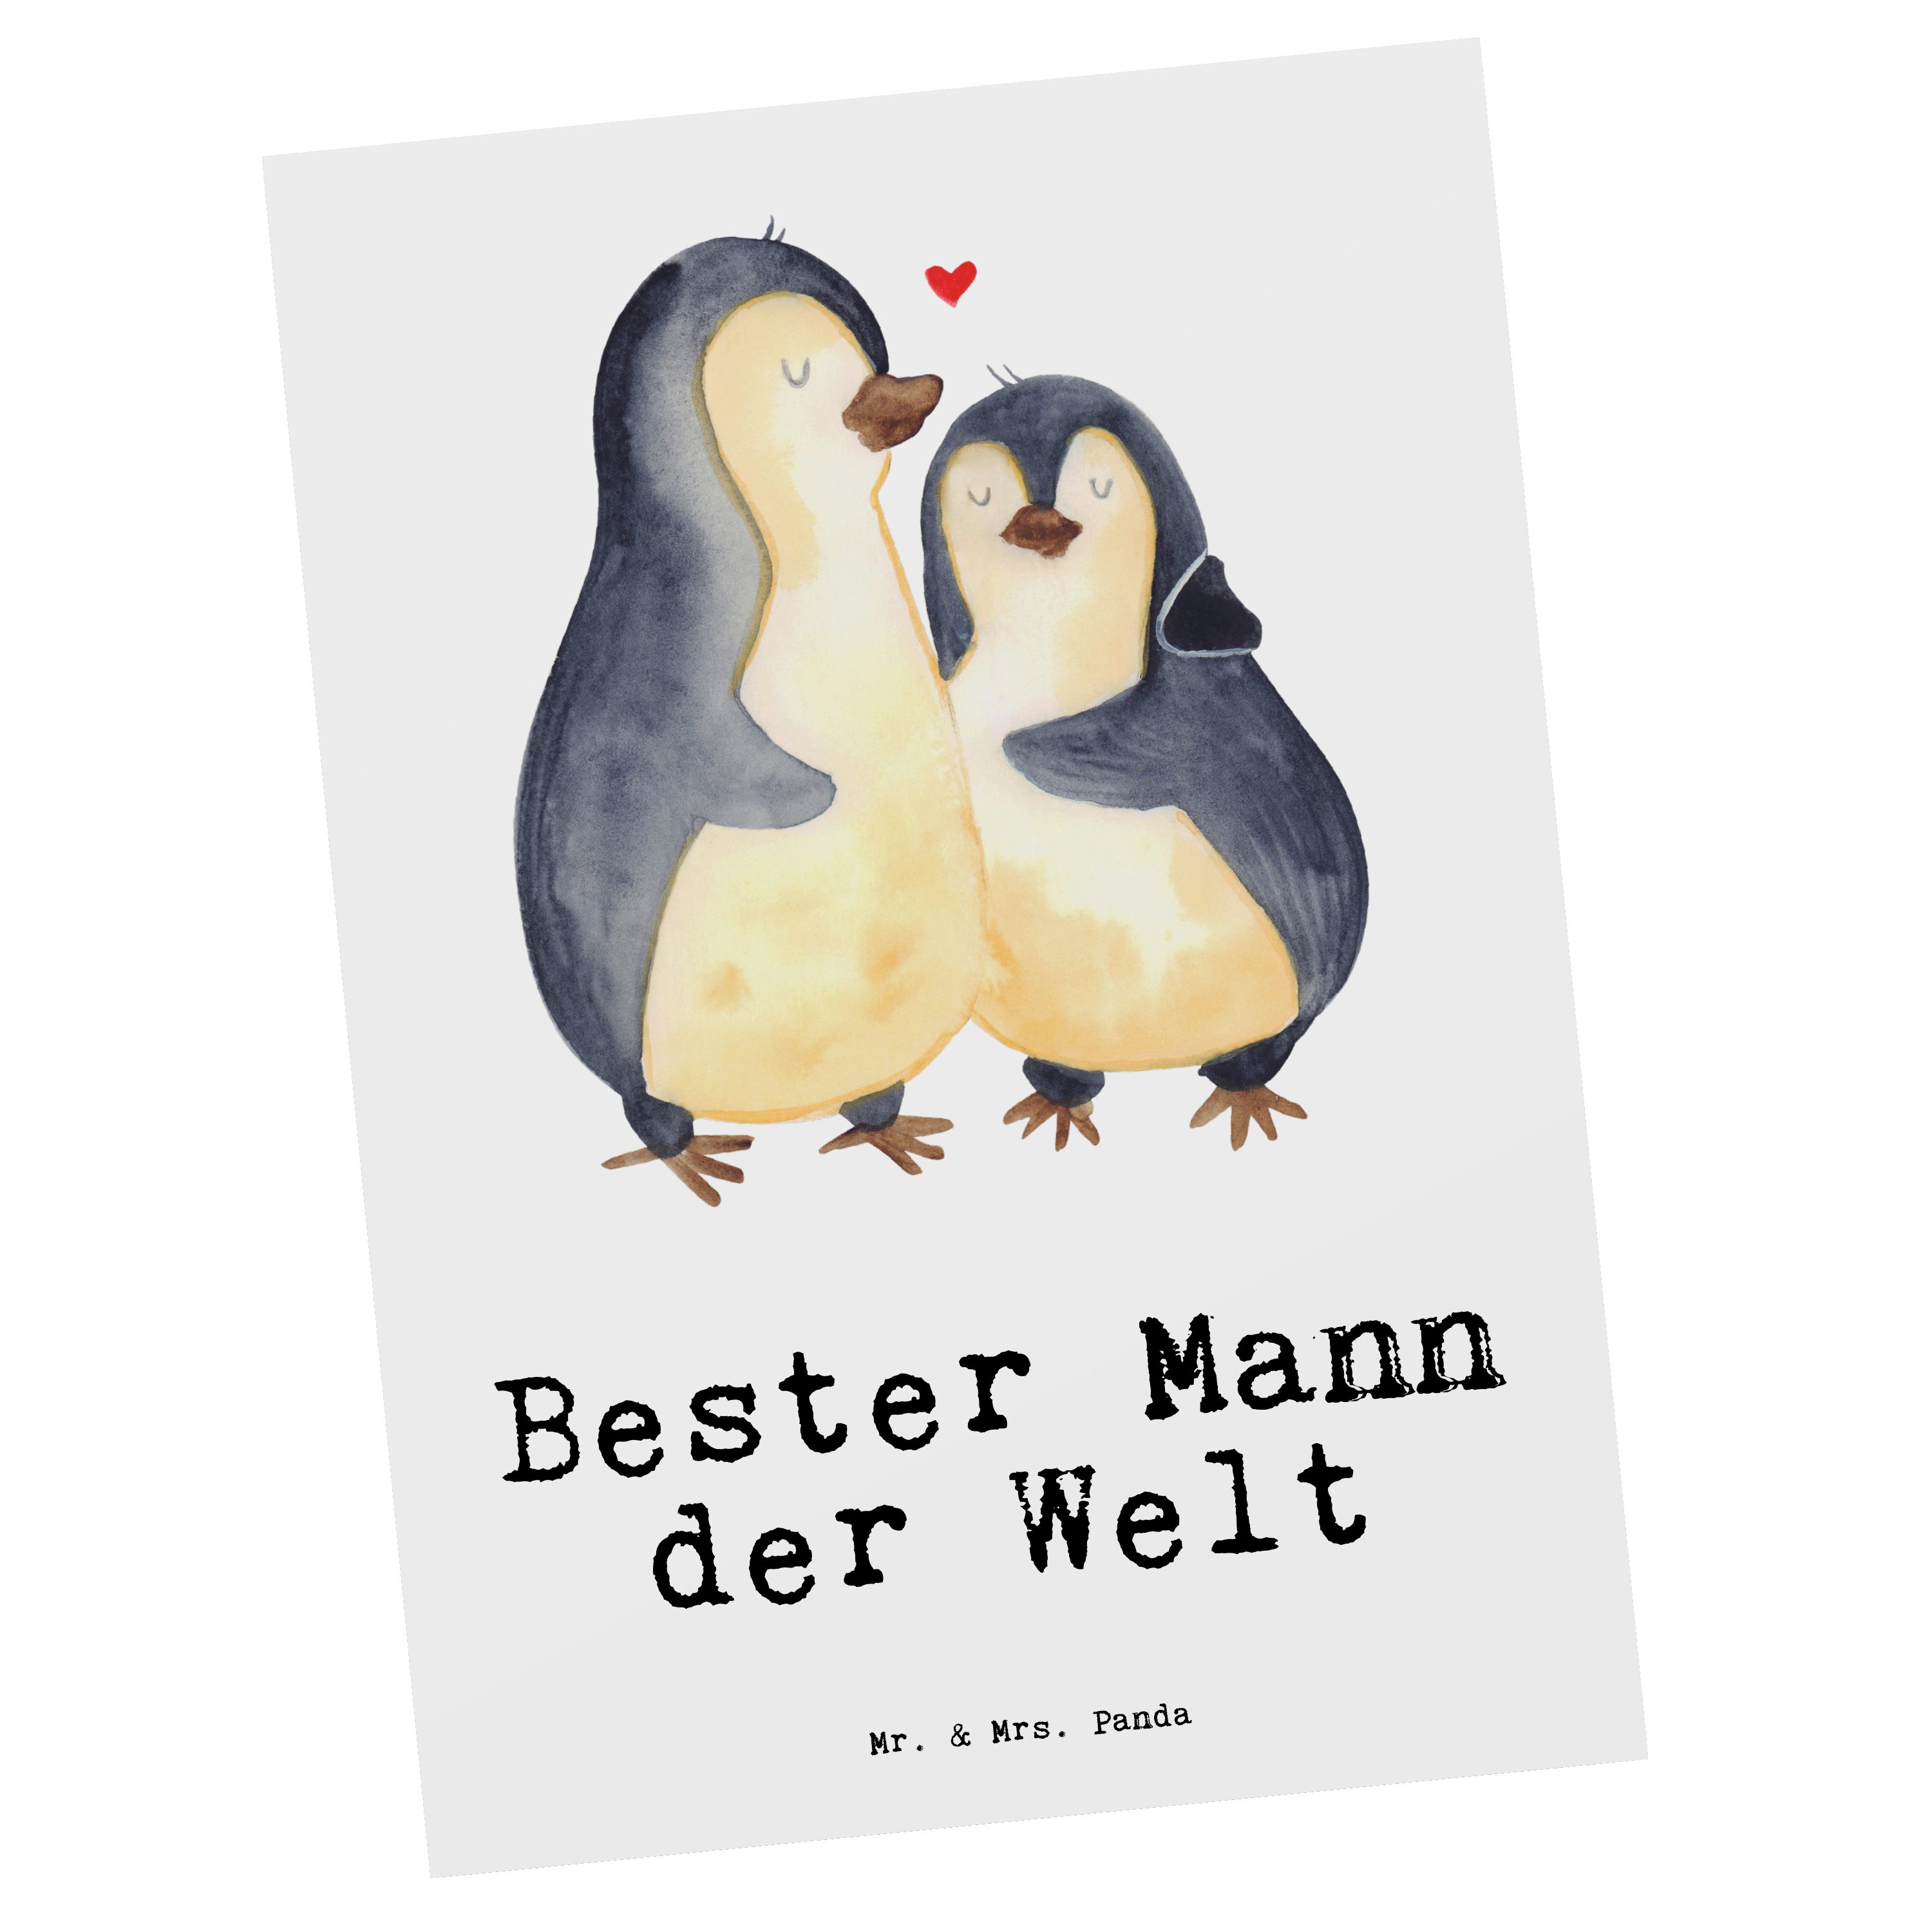 Mr. & Mrs. Panda Postkarte Pinguin Bester Mann der Welt - Weiß - Geschenk, Lebensgefährte, Einladung, Geschenkidee, Freude machen, Karte, Mitbringsel, Geschenkkarte, Bräutigam